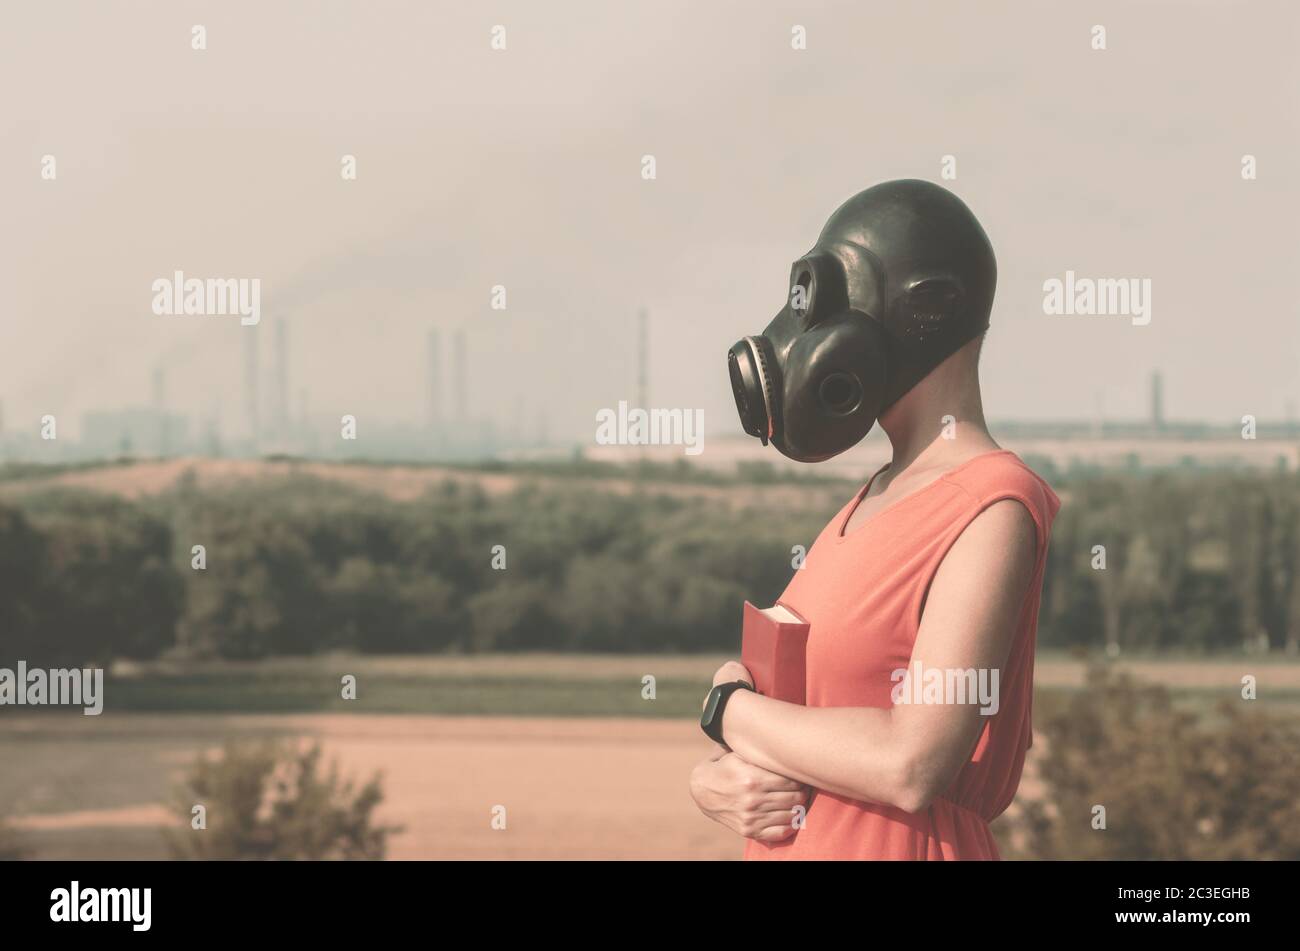 Maschera Contro Il Gas Immagini e Fotos Stock - Alamy